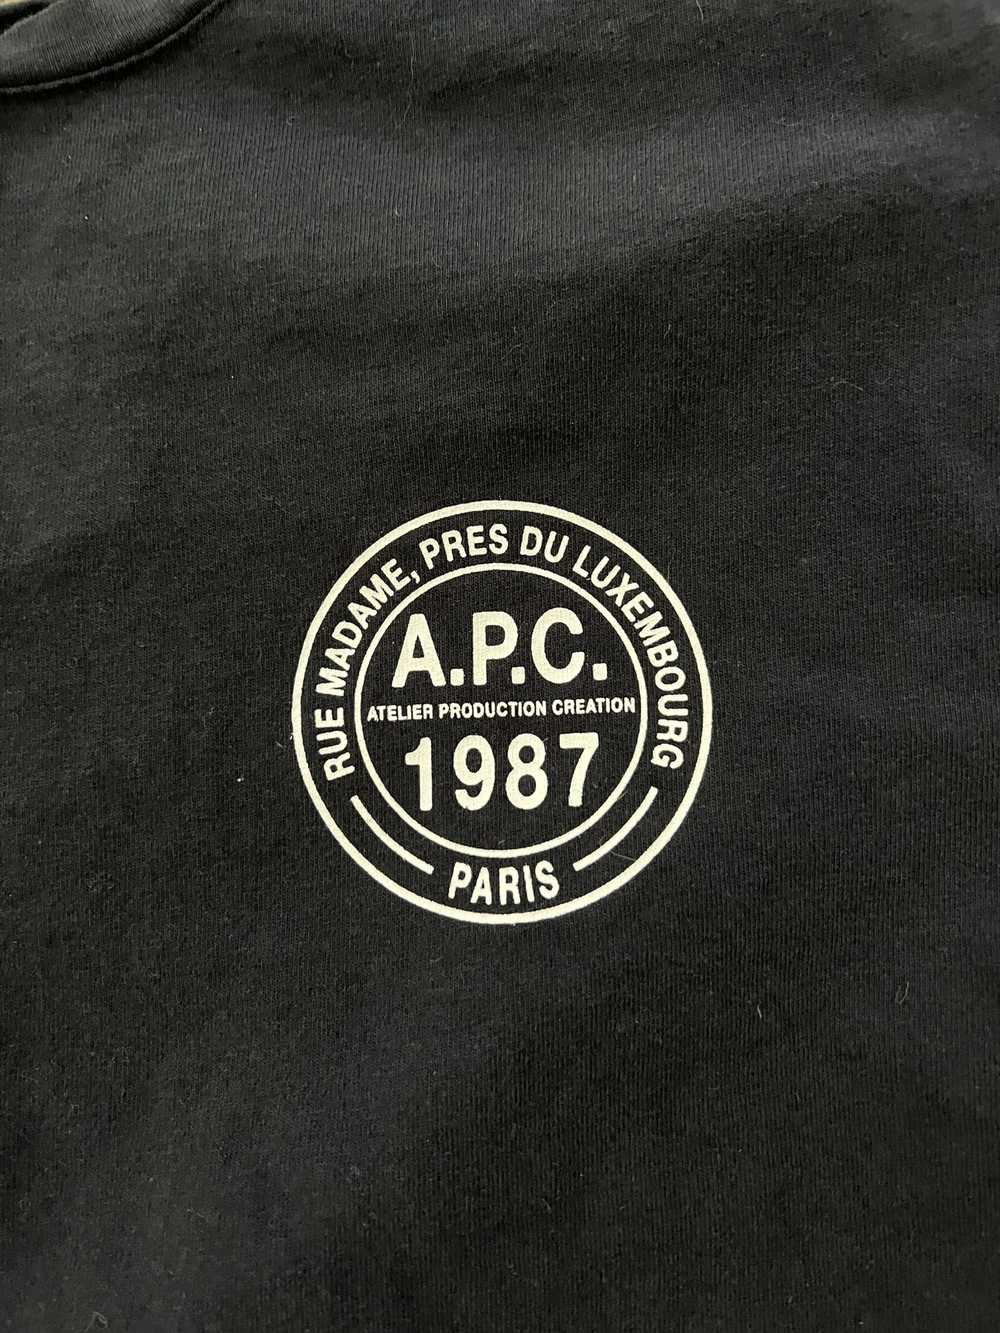 A.P.C. Ollie t-shirt - image 2